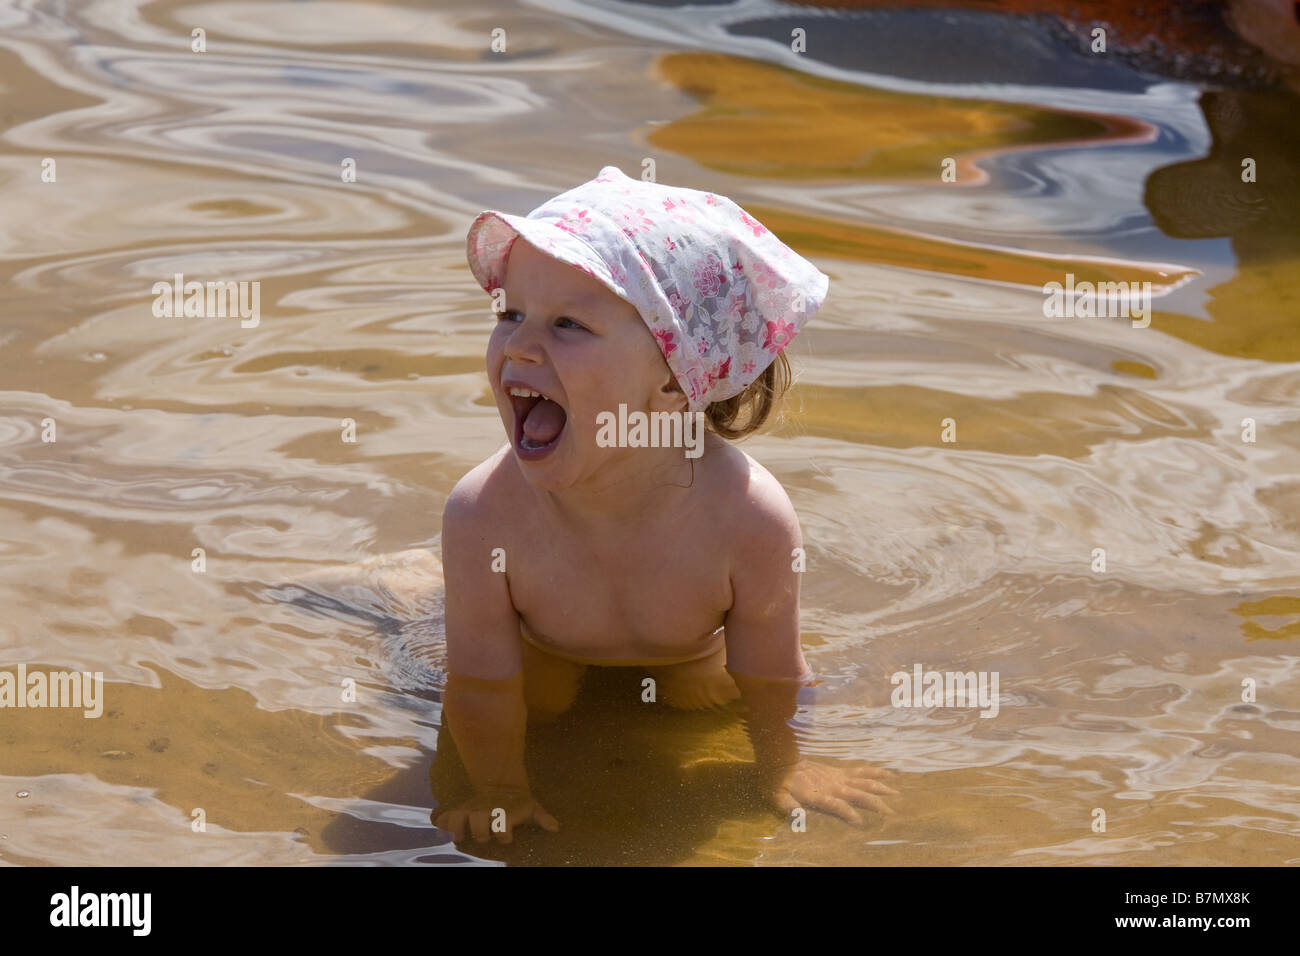 Deux ans, fille, jouant dans l'eau Banque D'Images